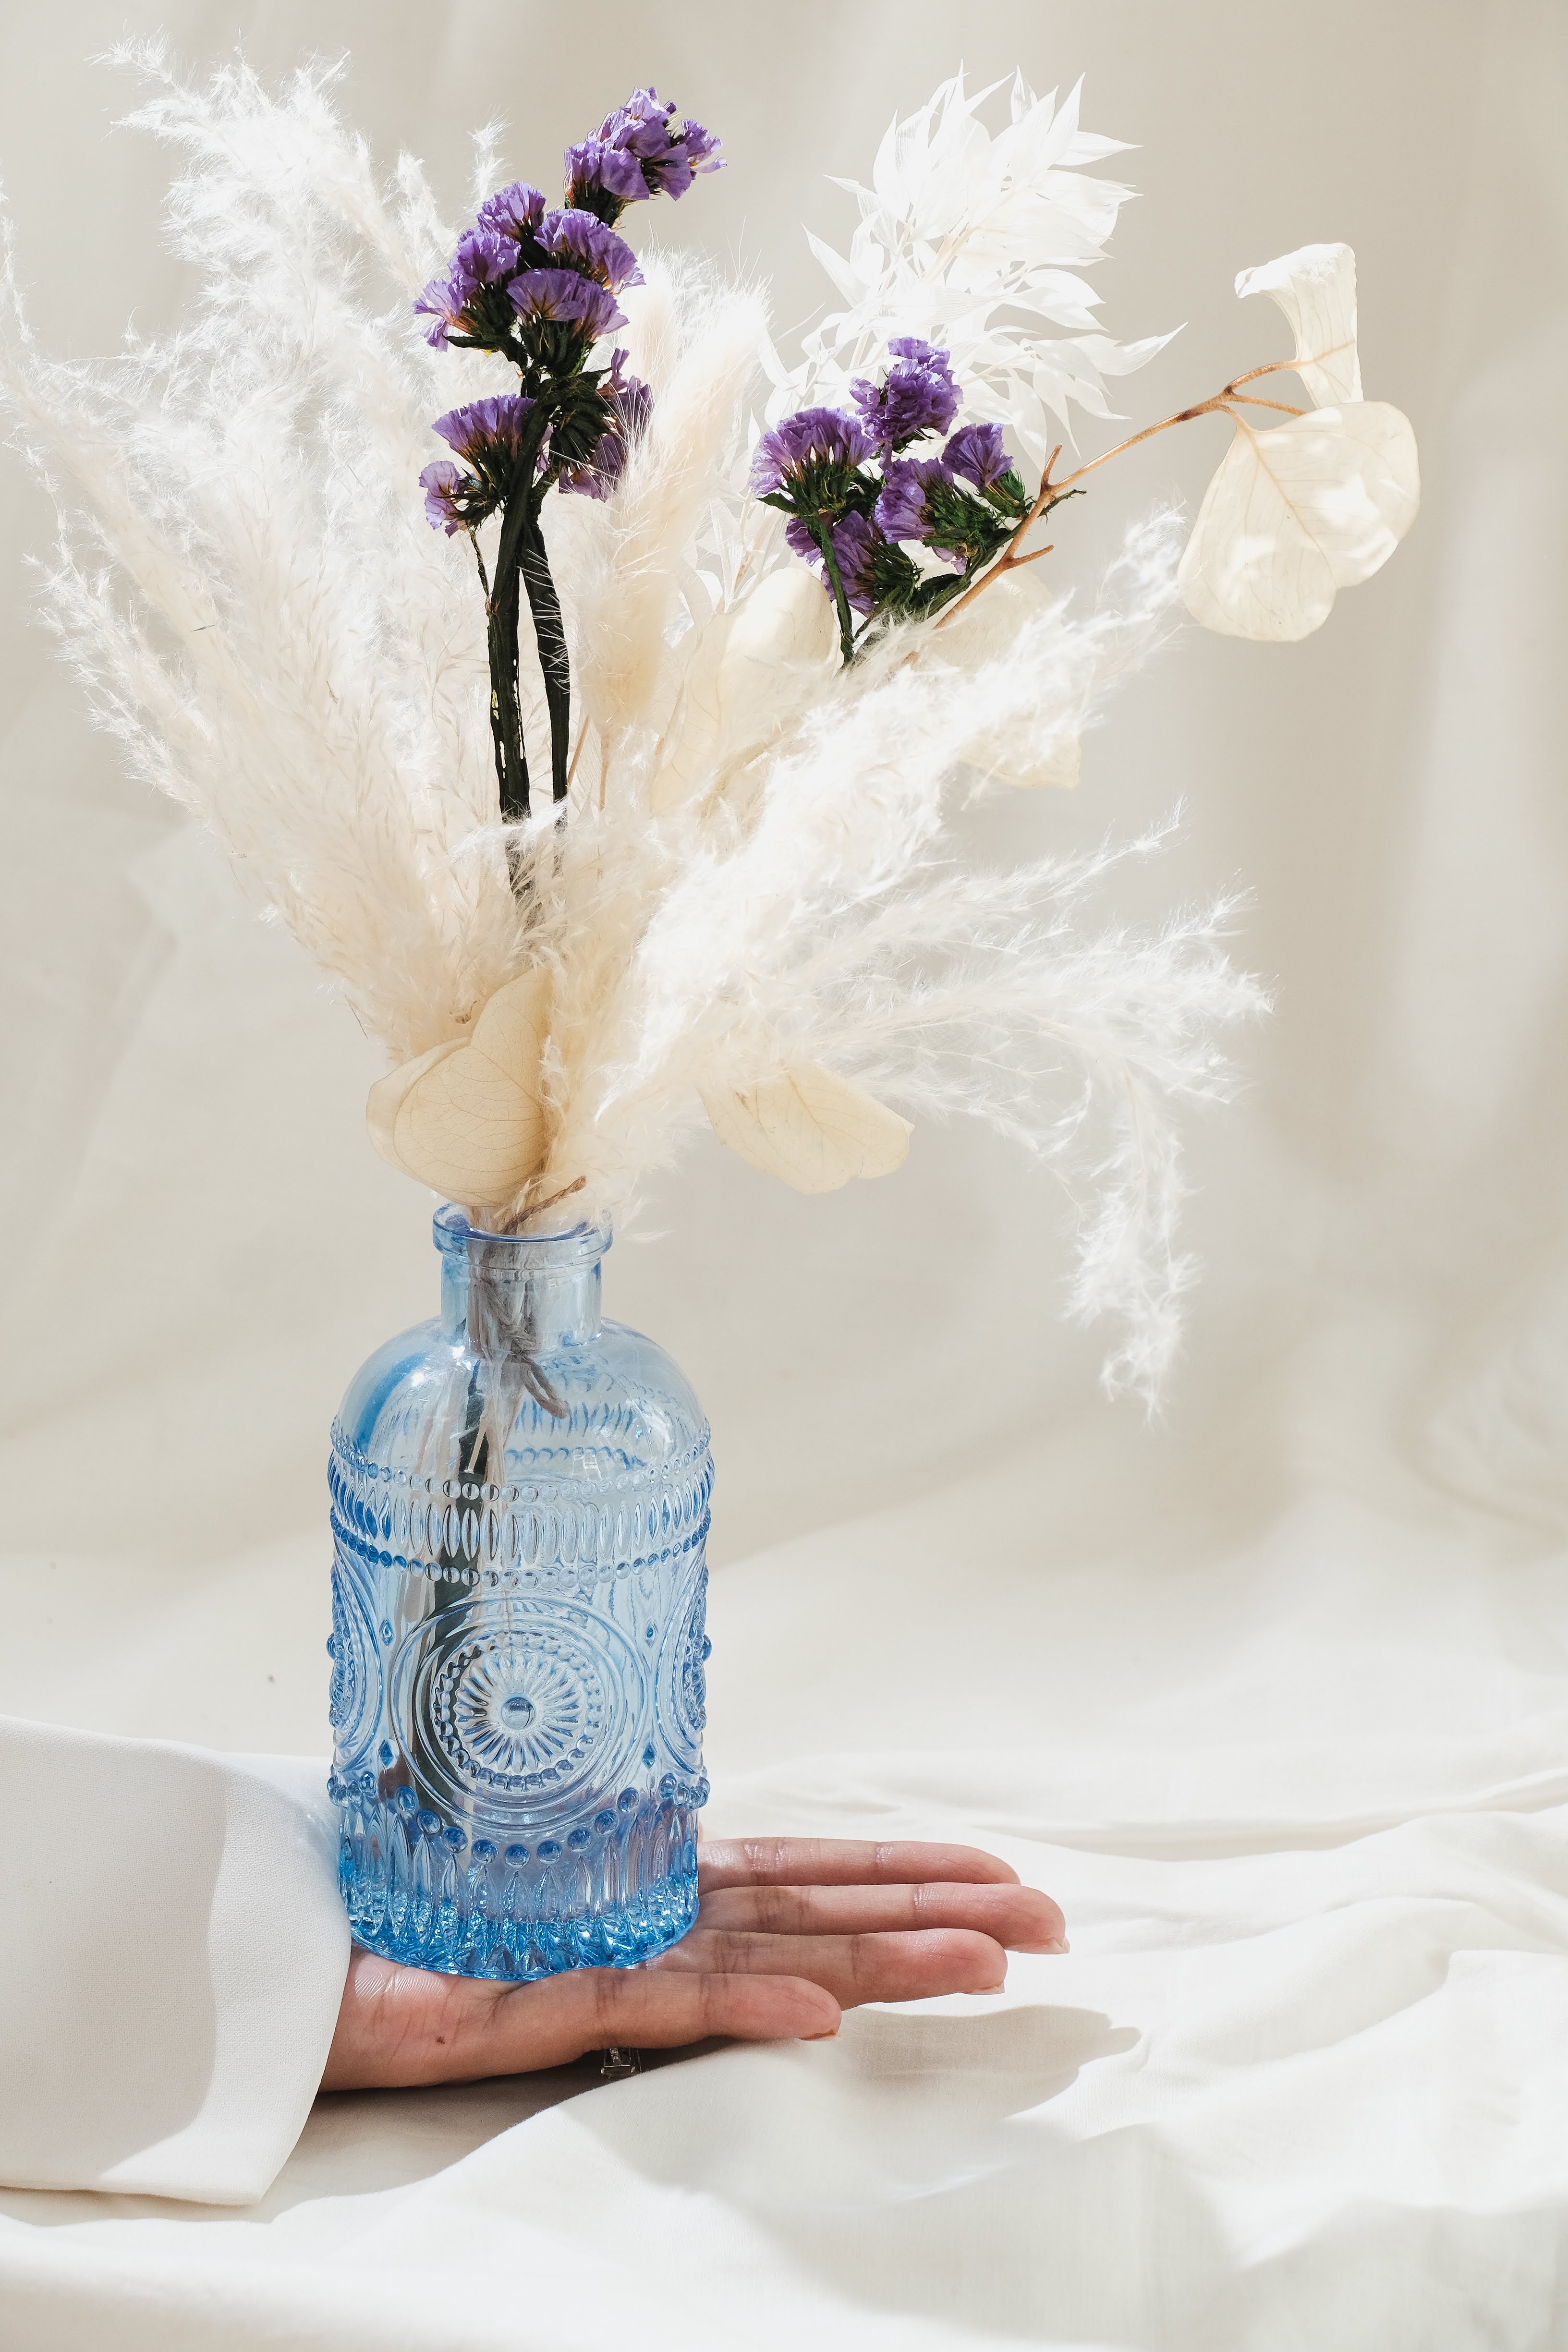 Moroccan Blue vase